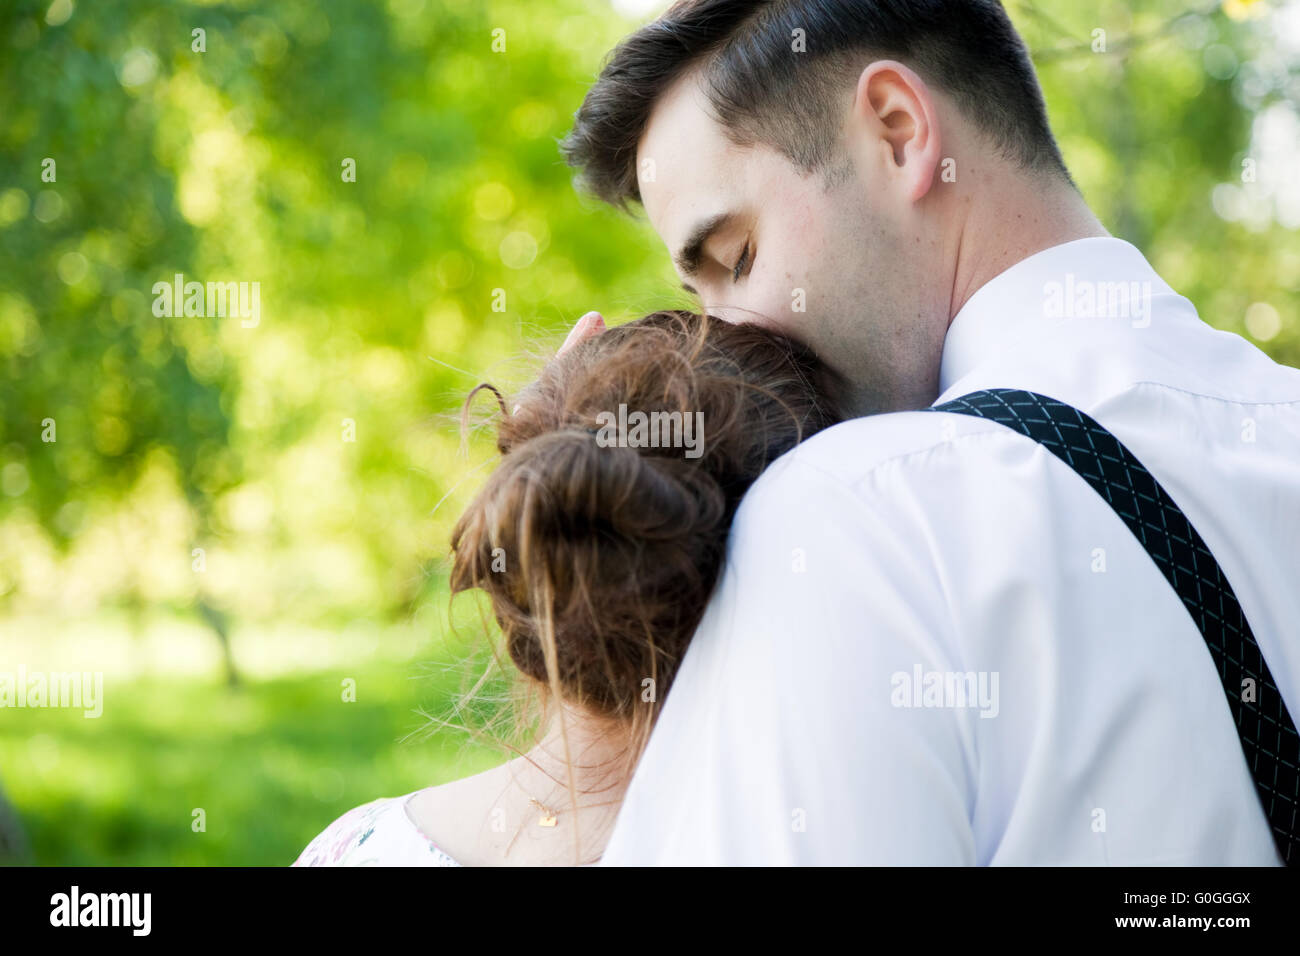 Schönen jungen Mann sanft küssen seine Verlobte. Liebe Stockfoto